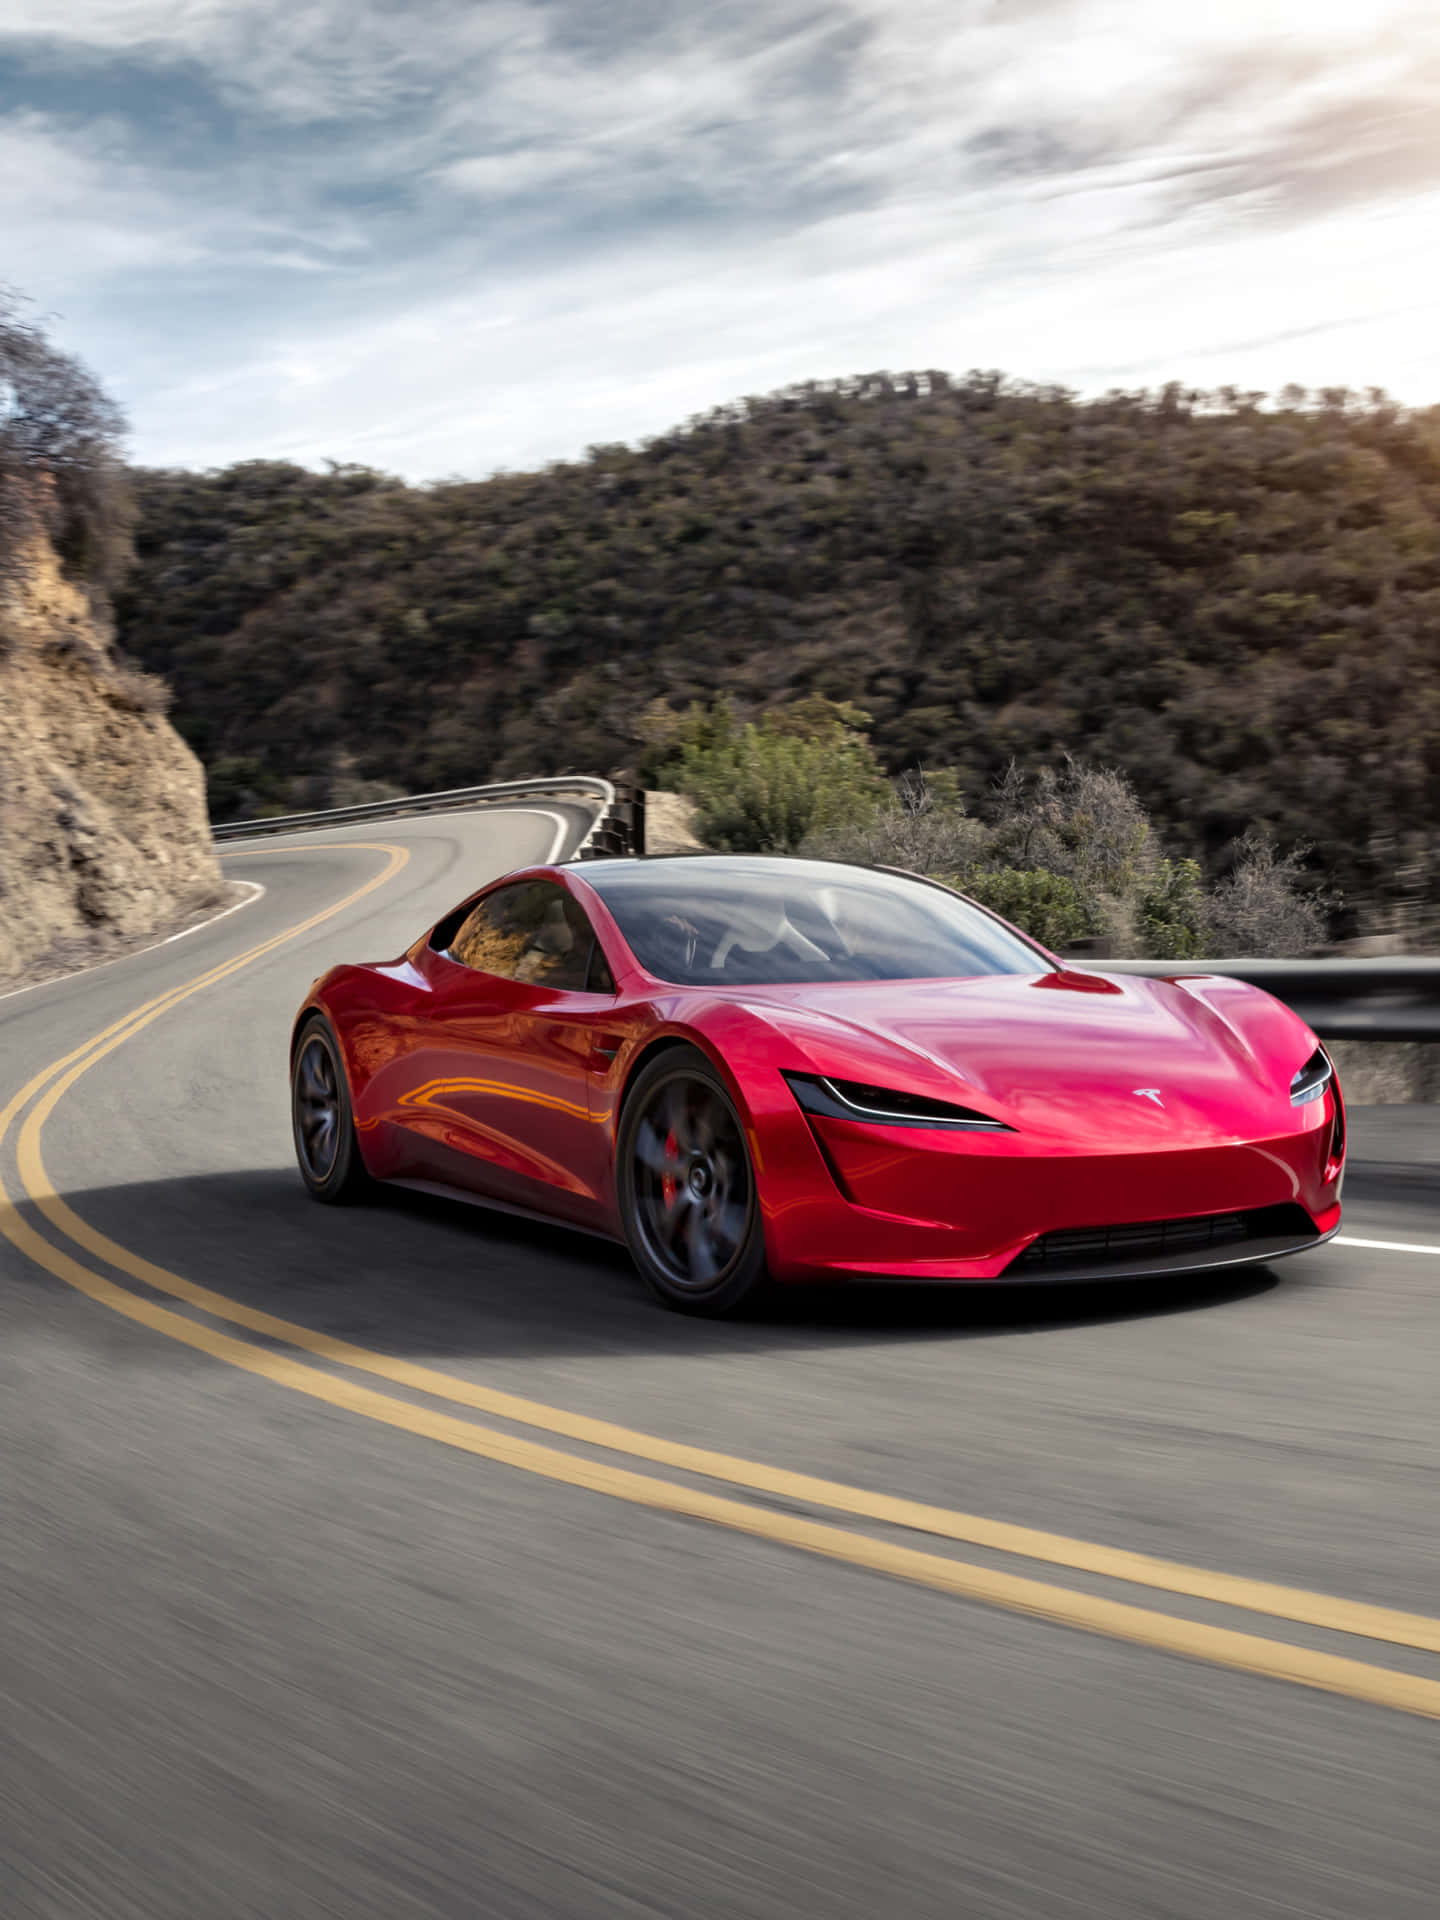 Den røde Tesla E-sportbil kører ned ad en bjergvej Wallpaper